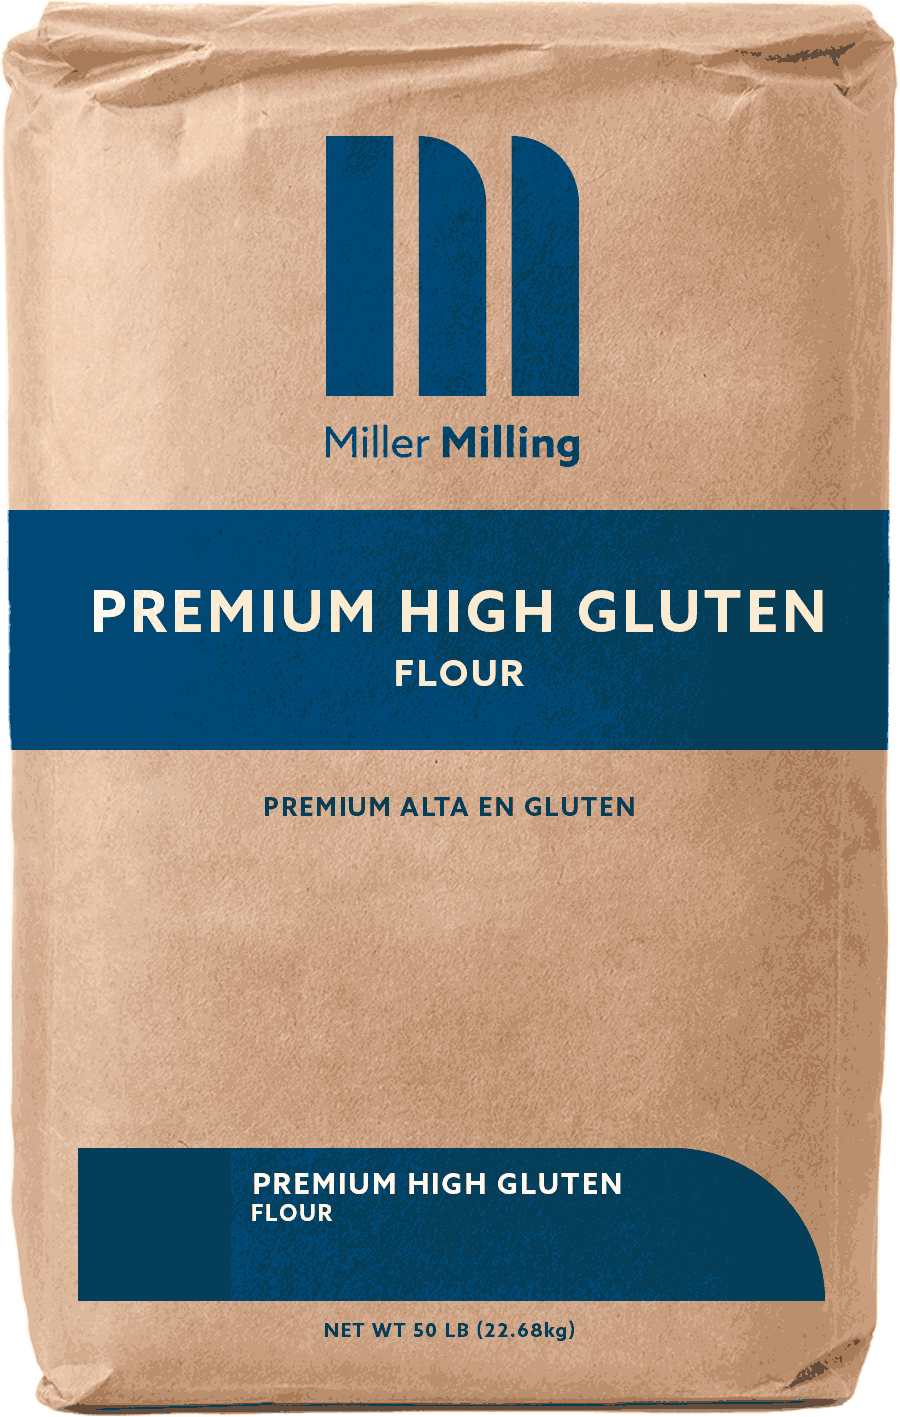 Premium High Gluten flour